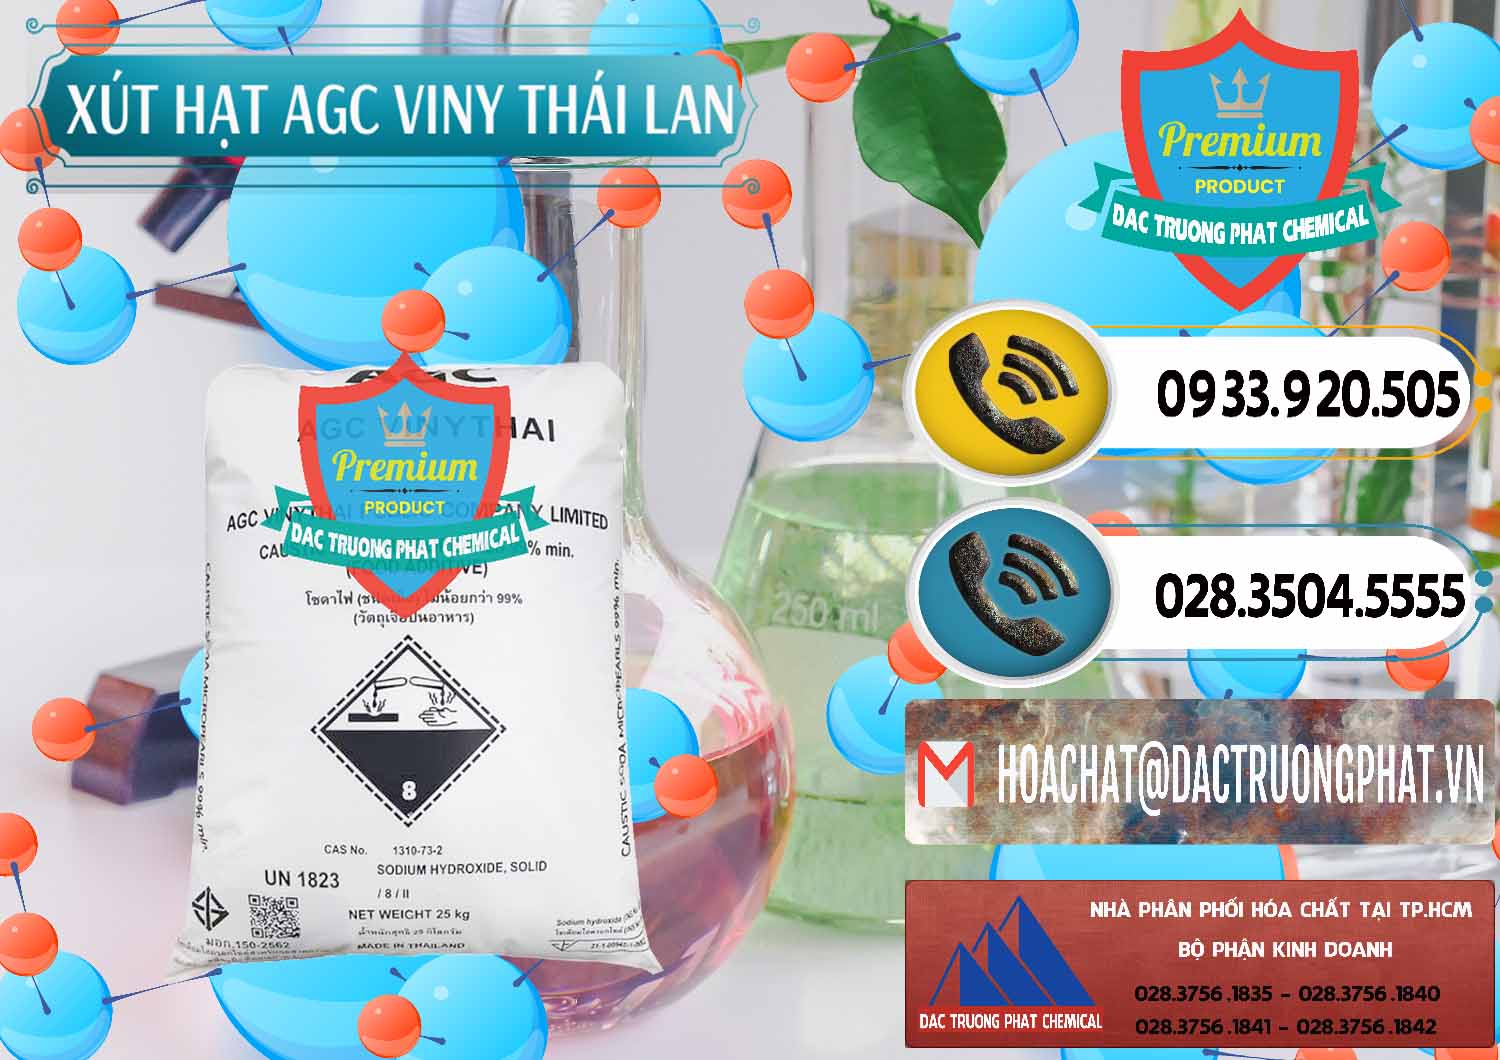 Chuyên bán ( cung cấp ) Xút Hạt - NaOH Bột 99% AGC Viny Thái Lan - 0399 - Chuyên phân phối và cung cấp hóa chất tại TP.HCM - hoachatdetnhuom.vn